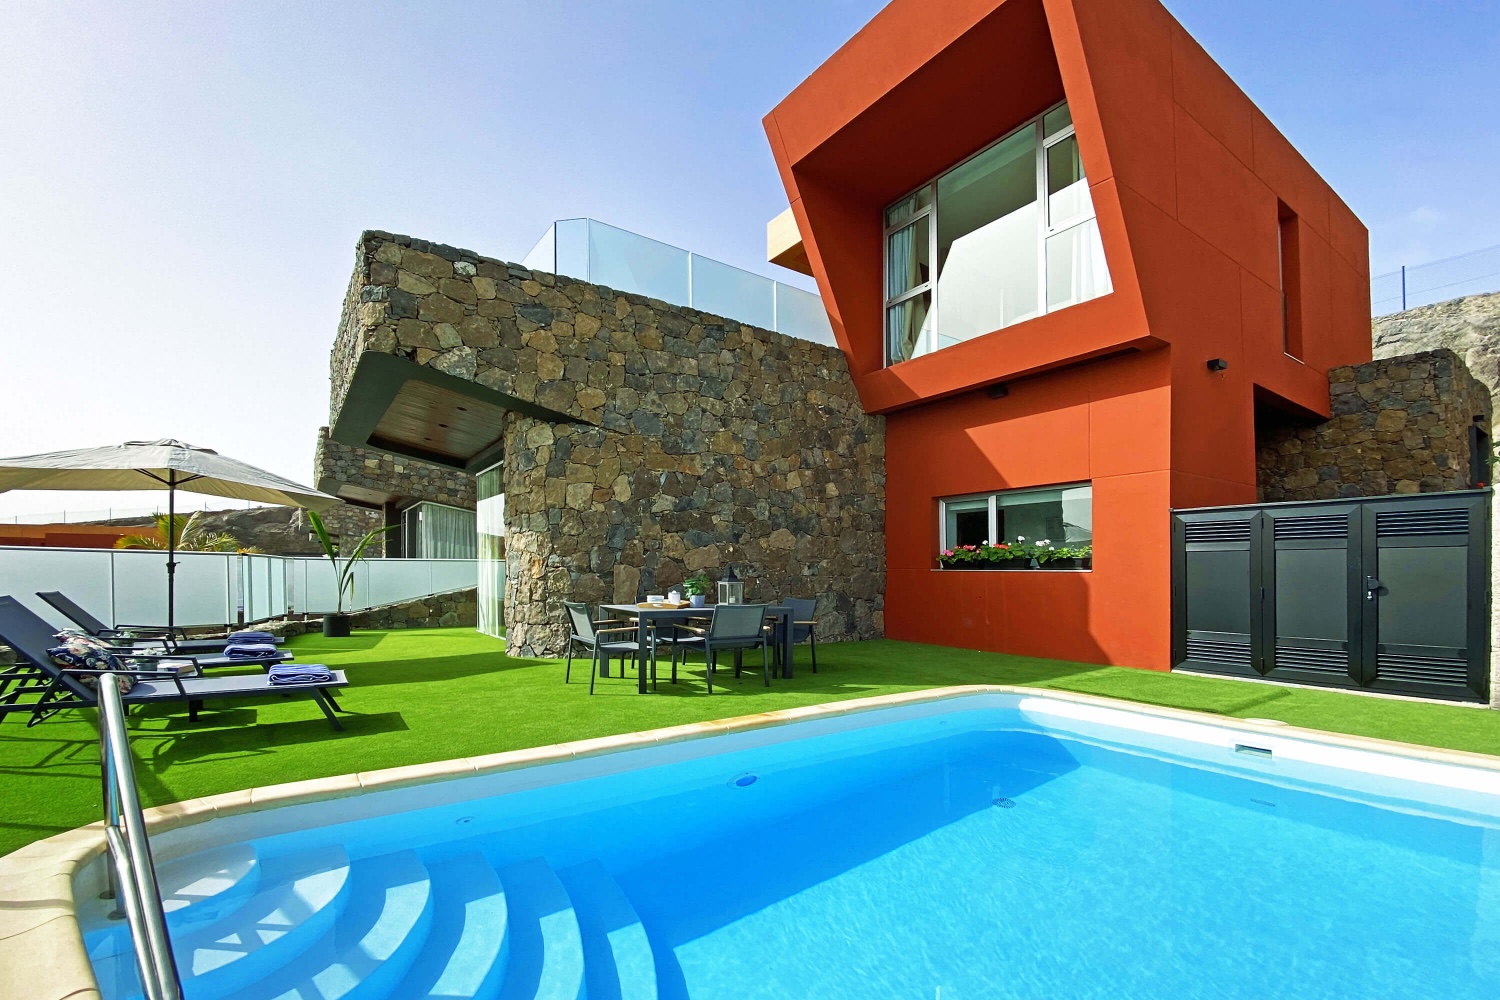 Villa moderna y luminosa, totalmente equipada, perfecta para disfrutar del buen tiempo del sur de Gran Canaria en un entorno singular.